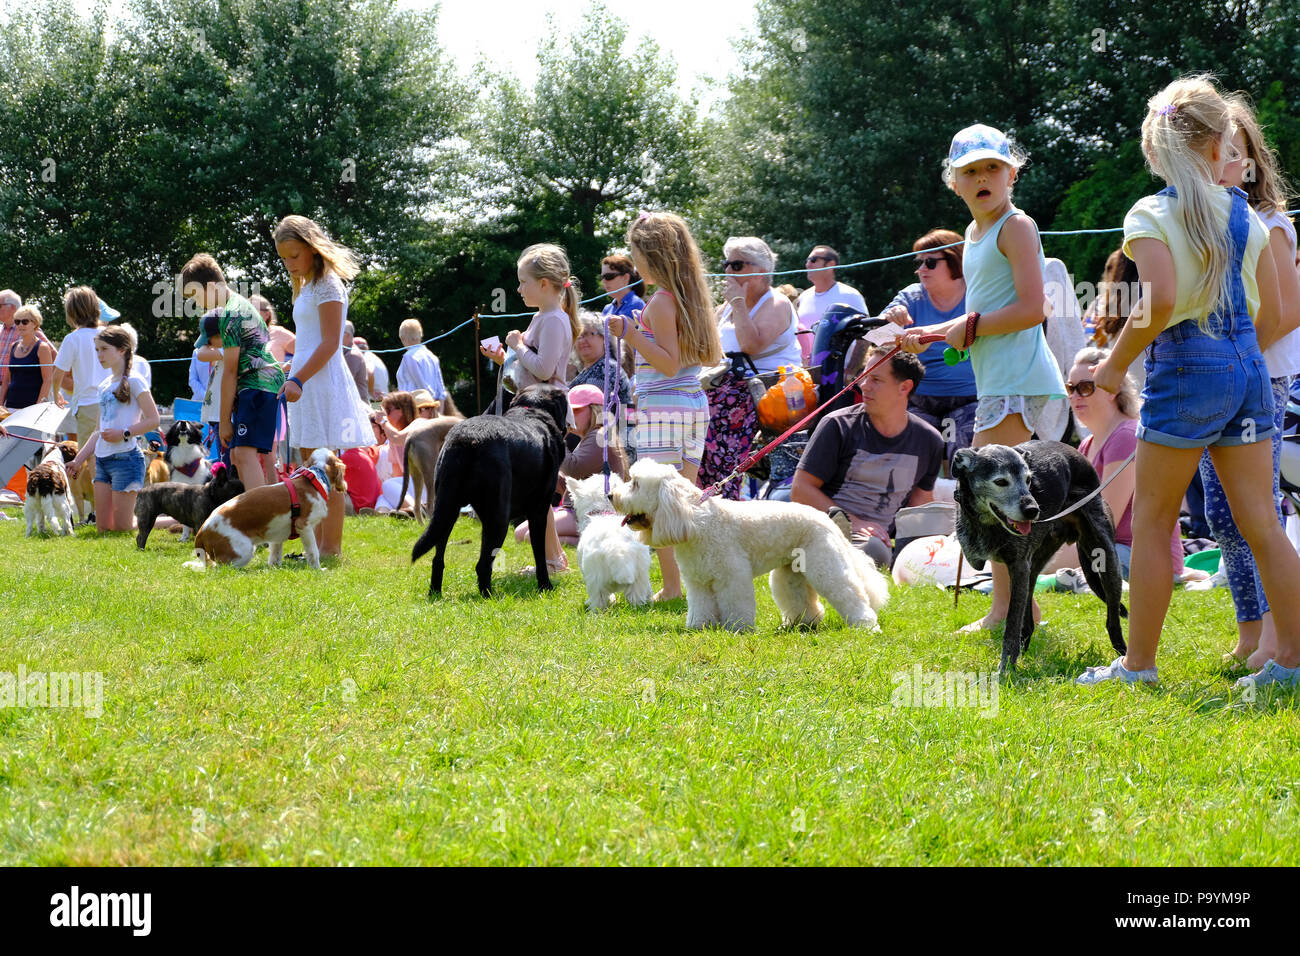 East Preston, West Sussex, UK. Fun dog show tenu le village vert - en attente pour les enfants de montrer leurs chiens de compagnie, y compris un vieux chien à trois pattes Banque D'Images